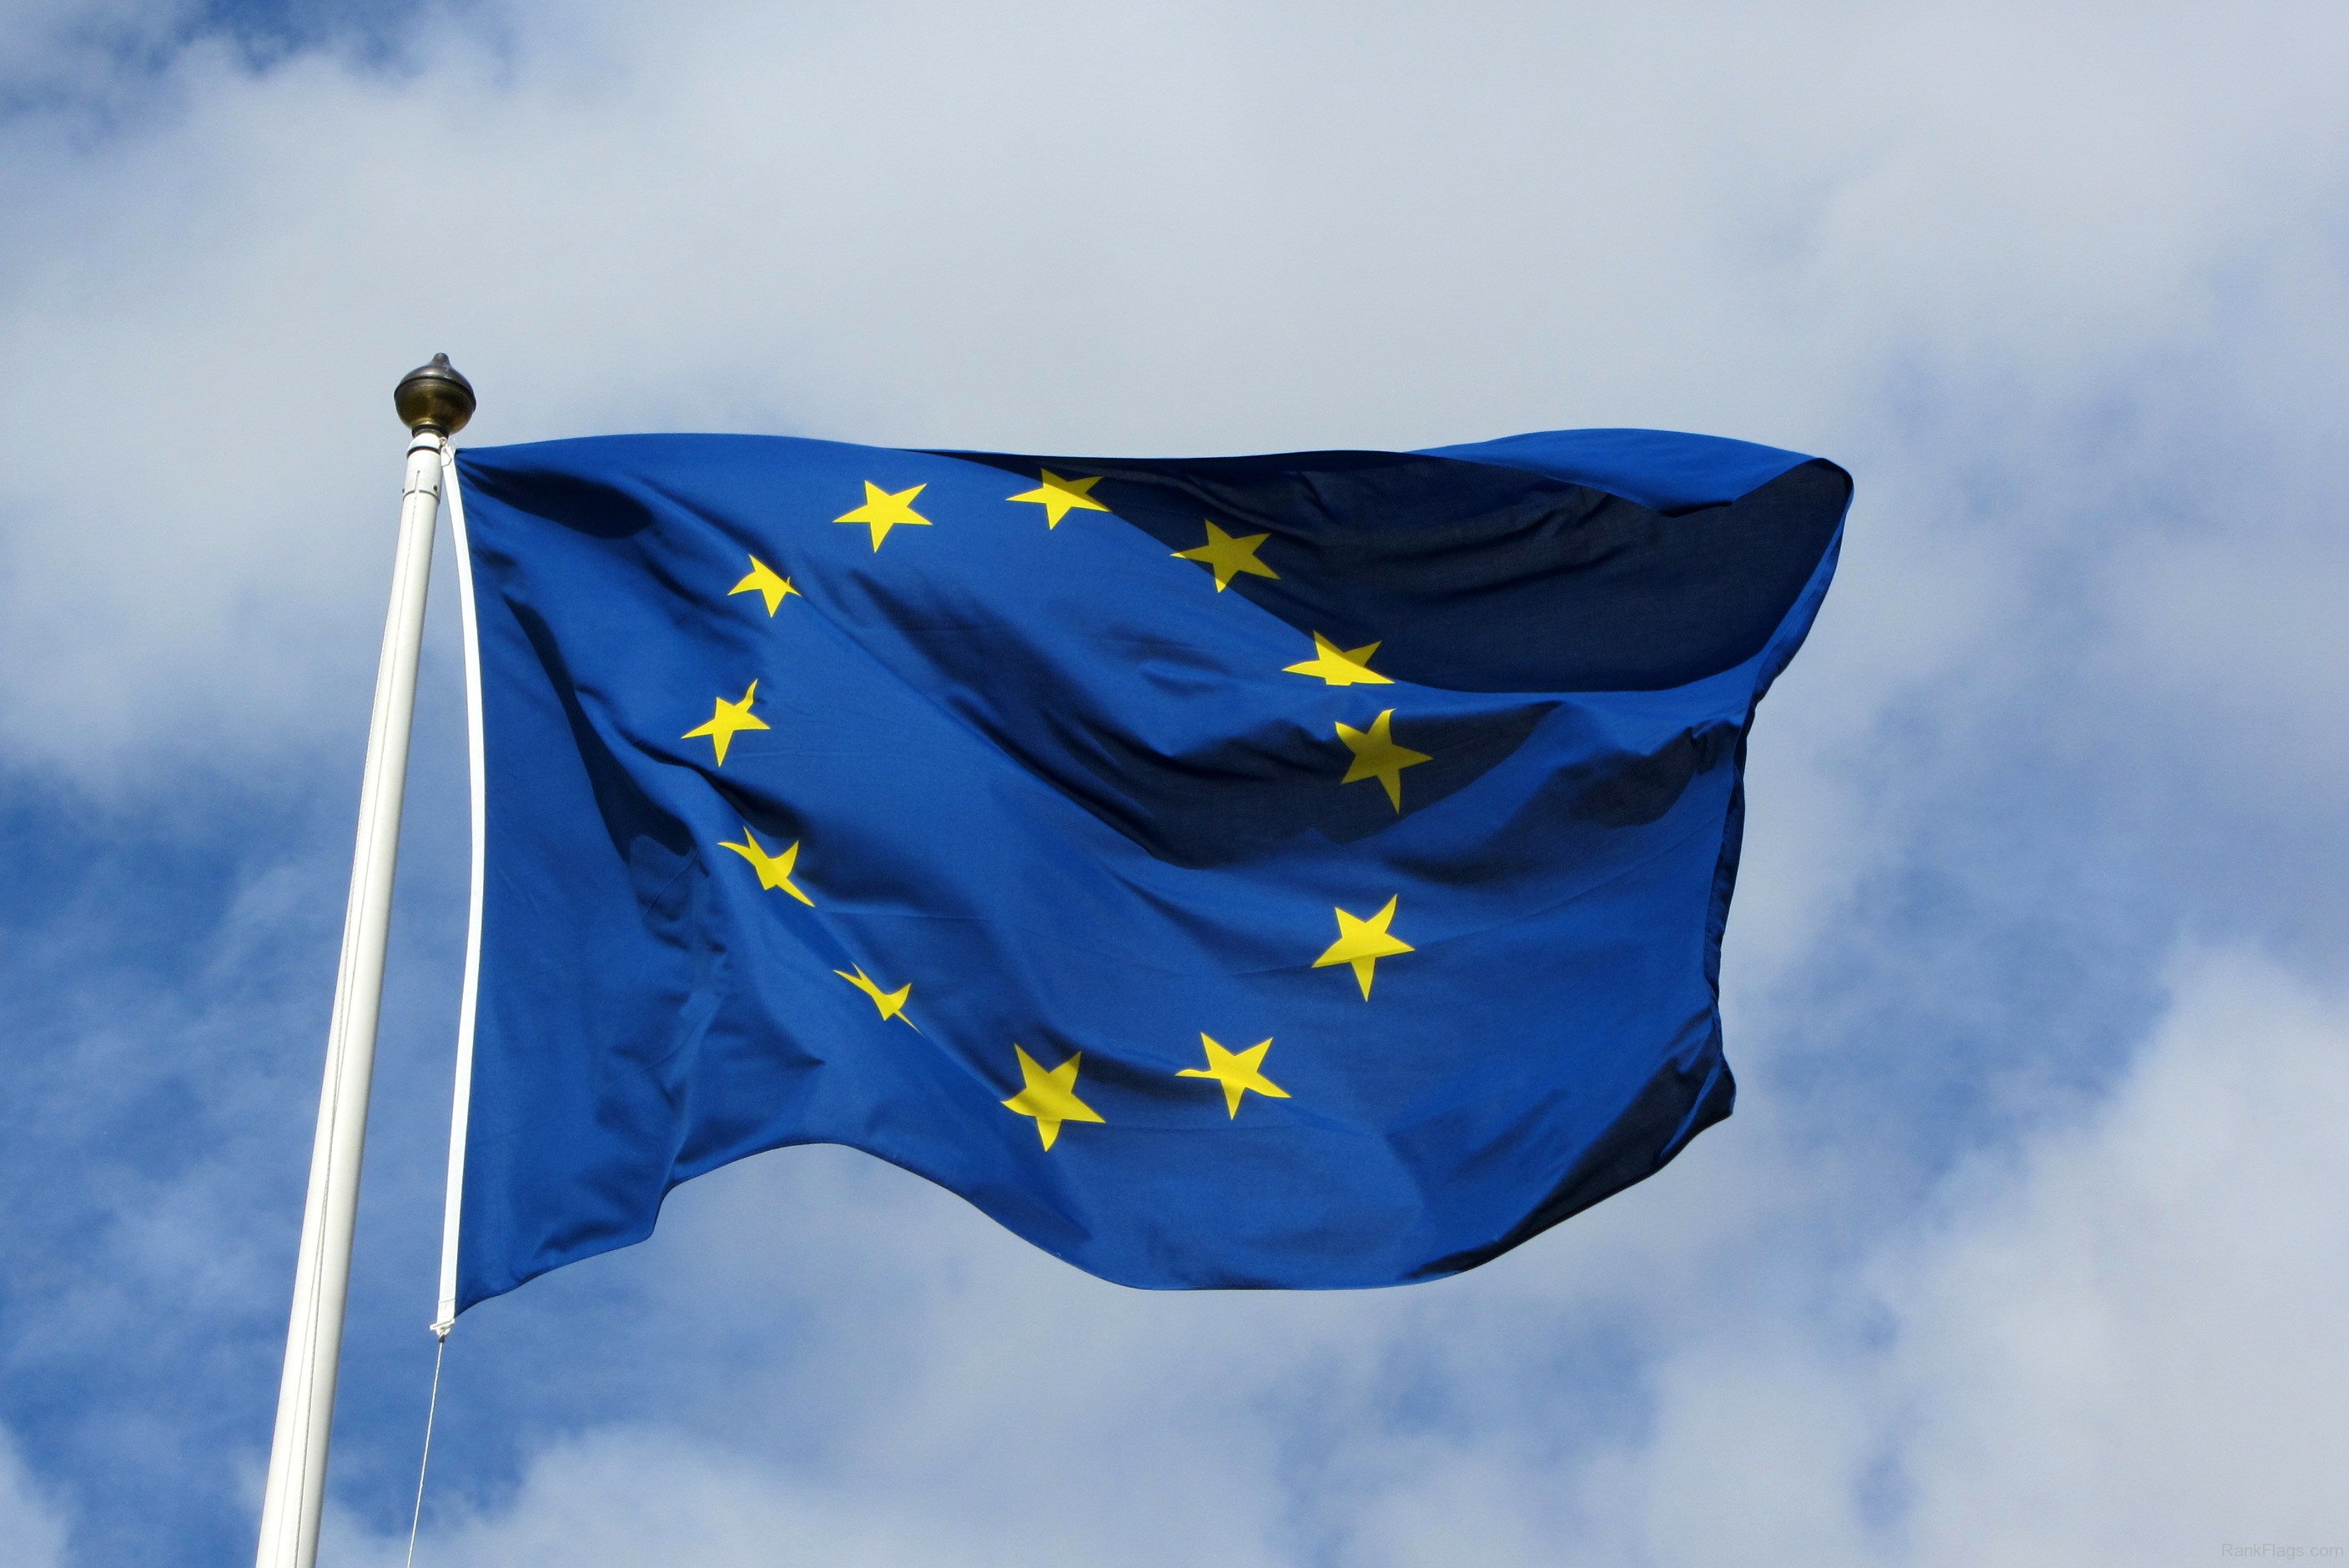 پرچم اتحادیه اروپا - RankFlags.com - مجموعه پرچم ها